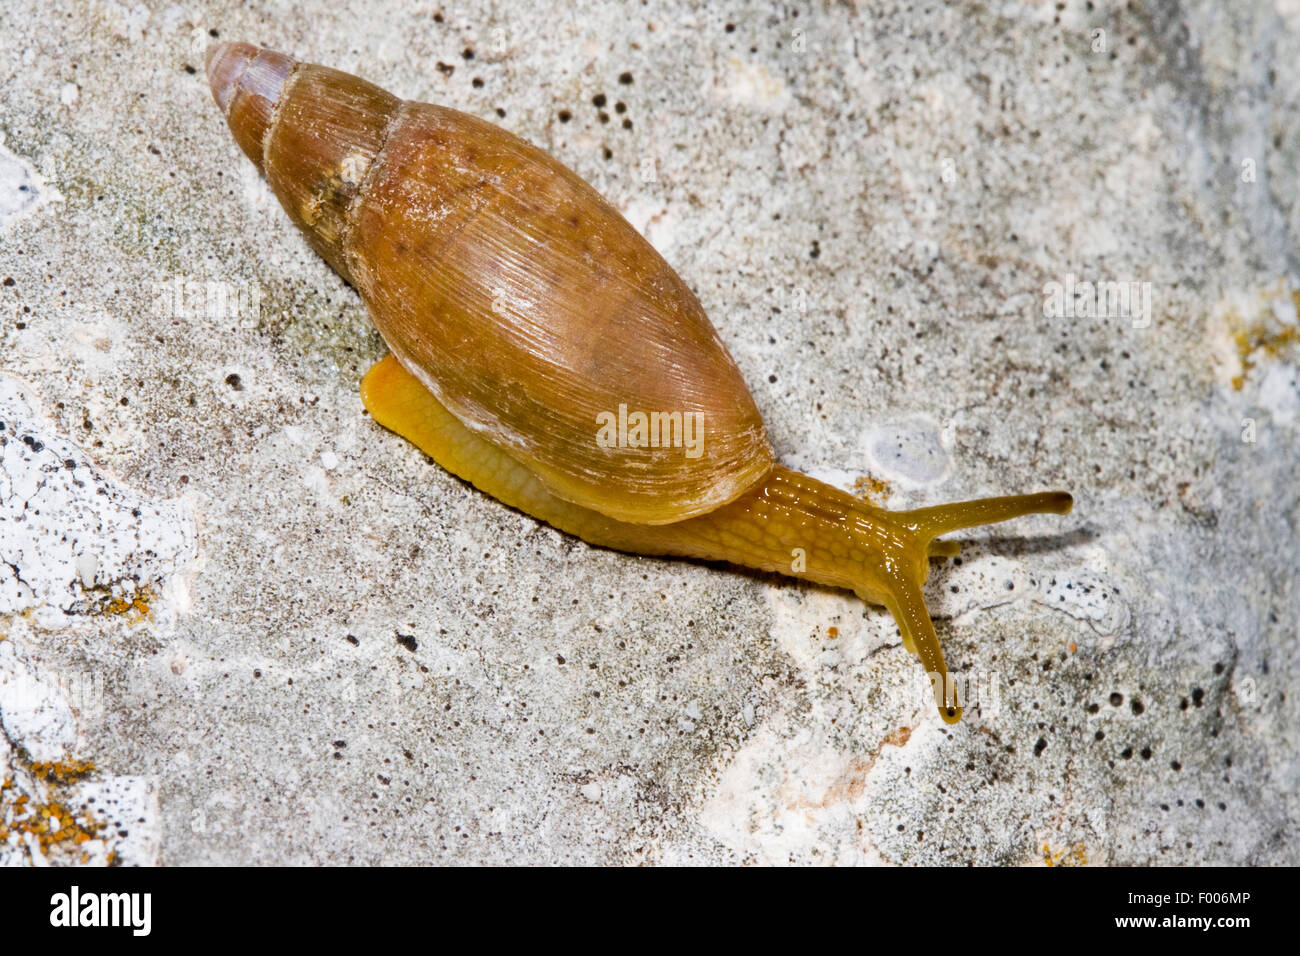 Predator dalmata (Poiretia cornea, Achatina cornea), striscianti su una roccia Foto Stock